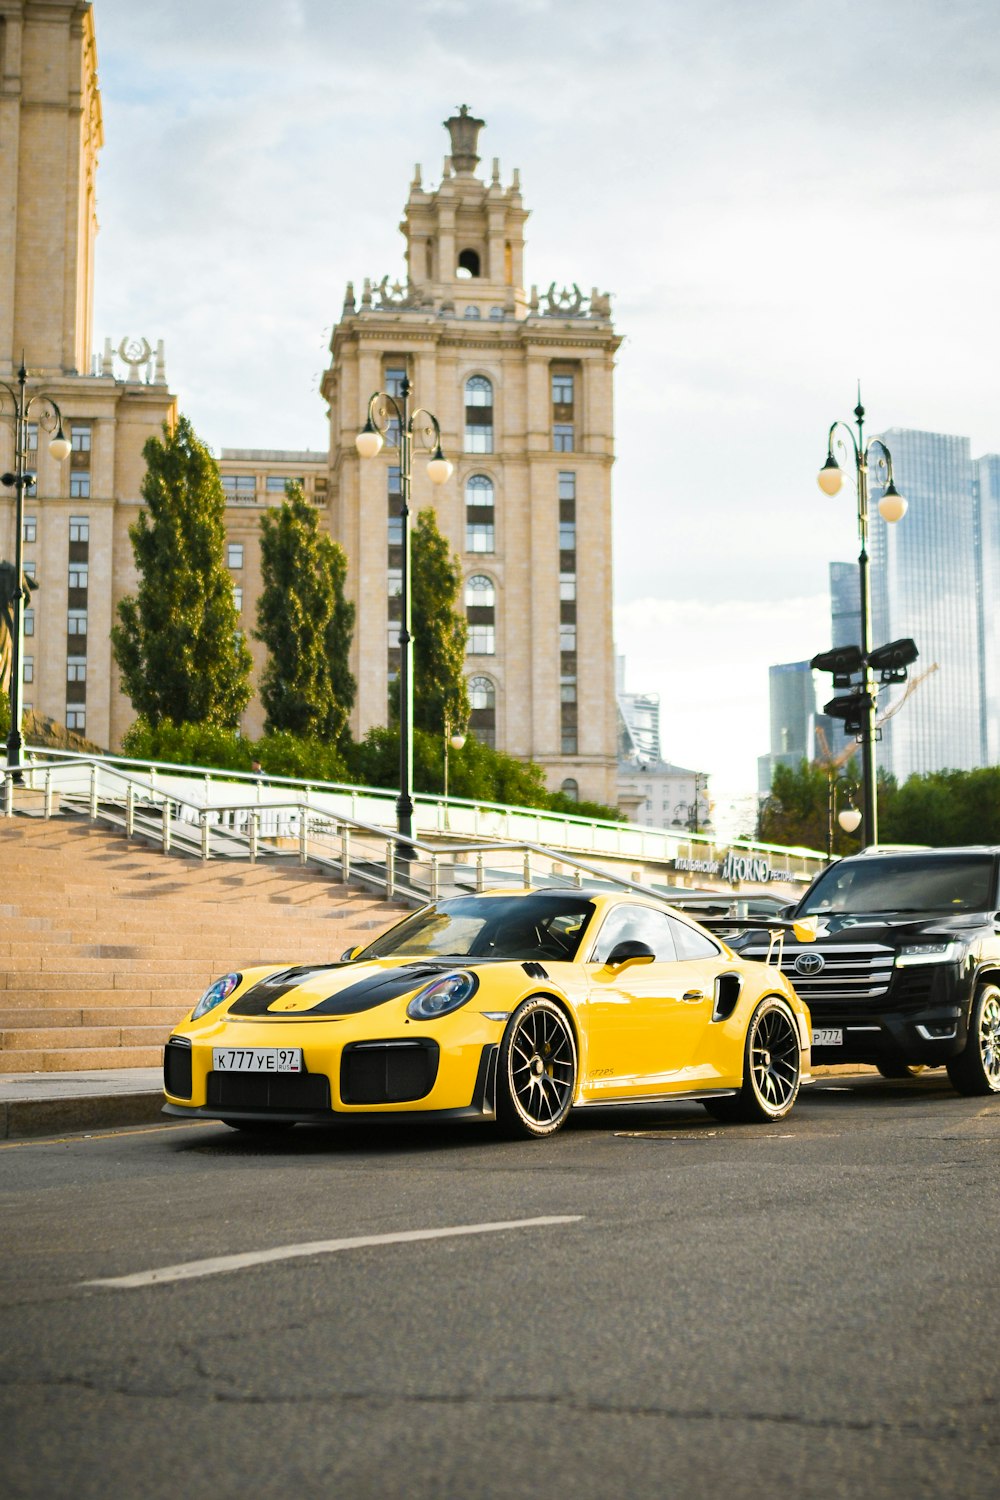 Un auto deportivo amarillo estacionado junto a un auto deportivo negro